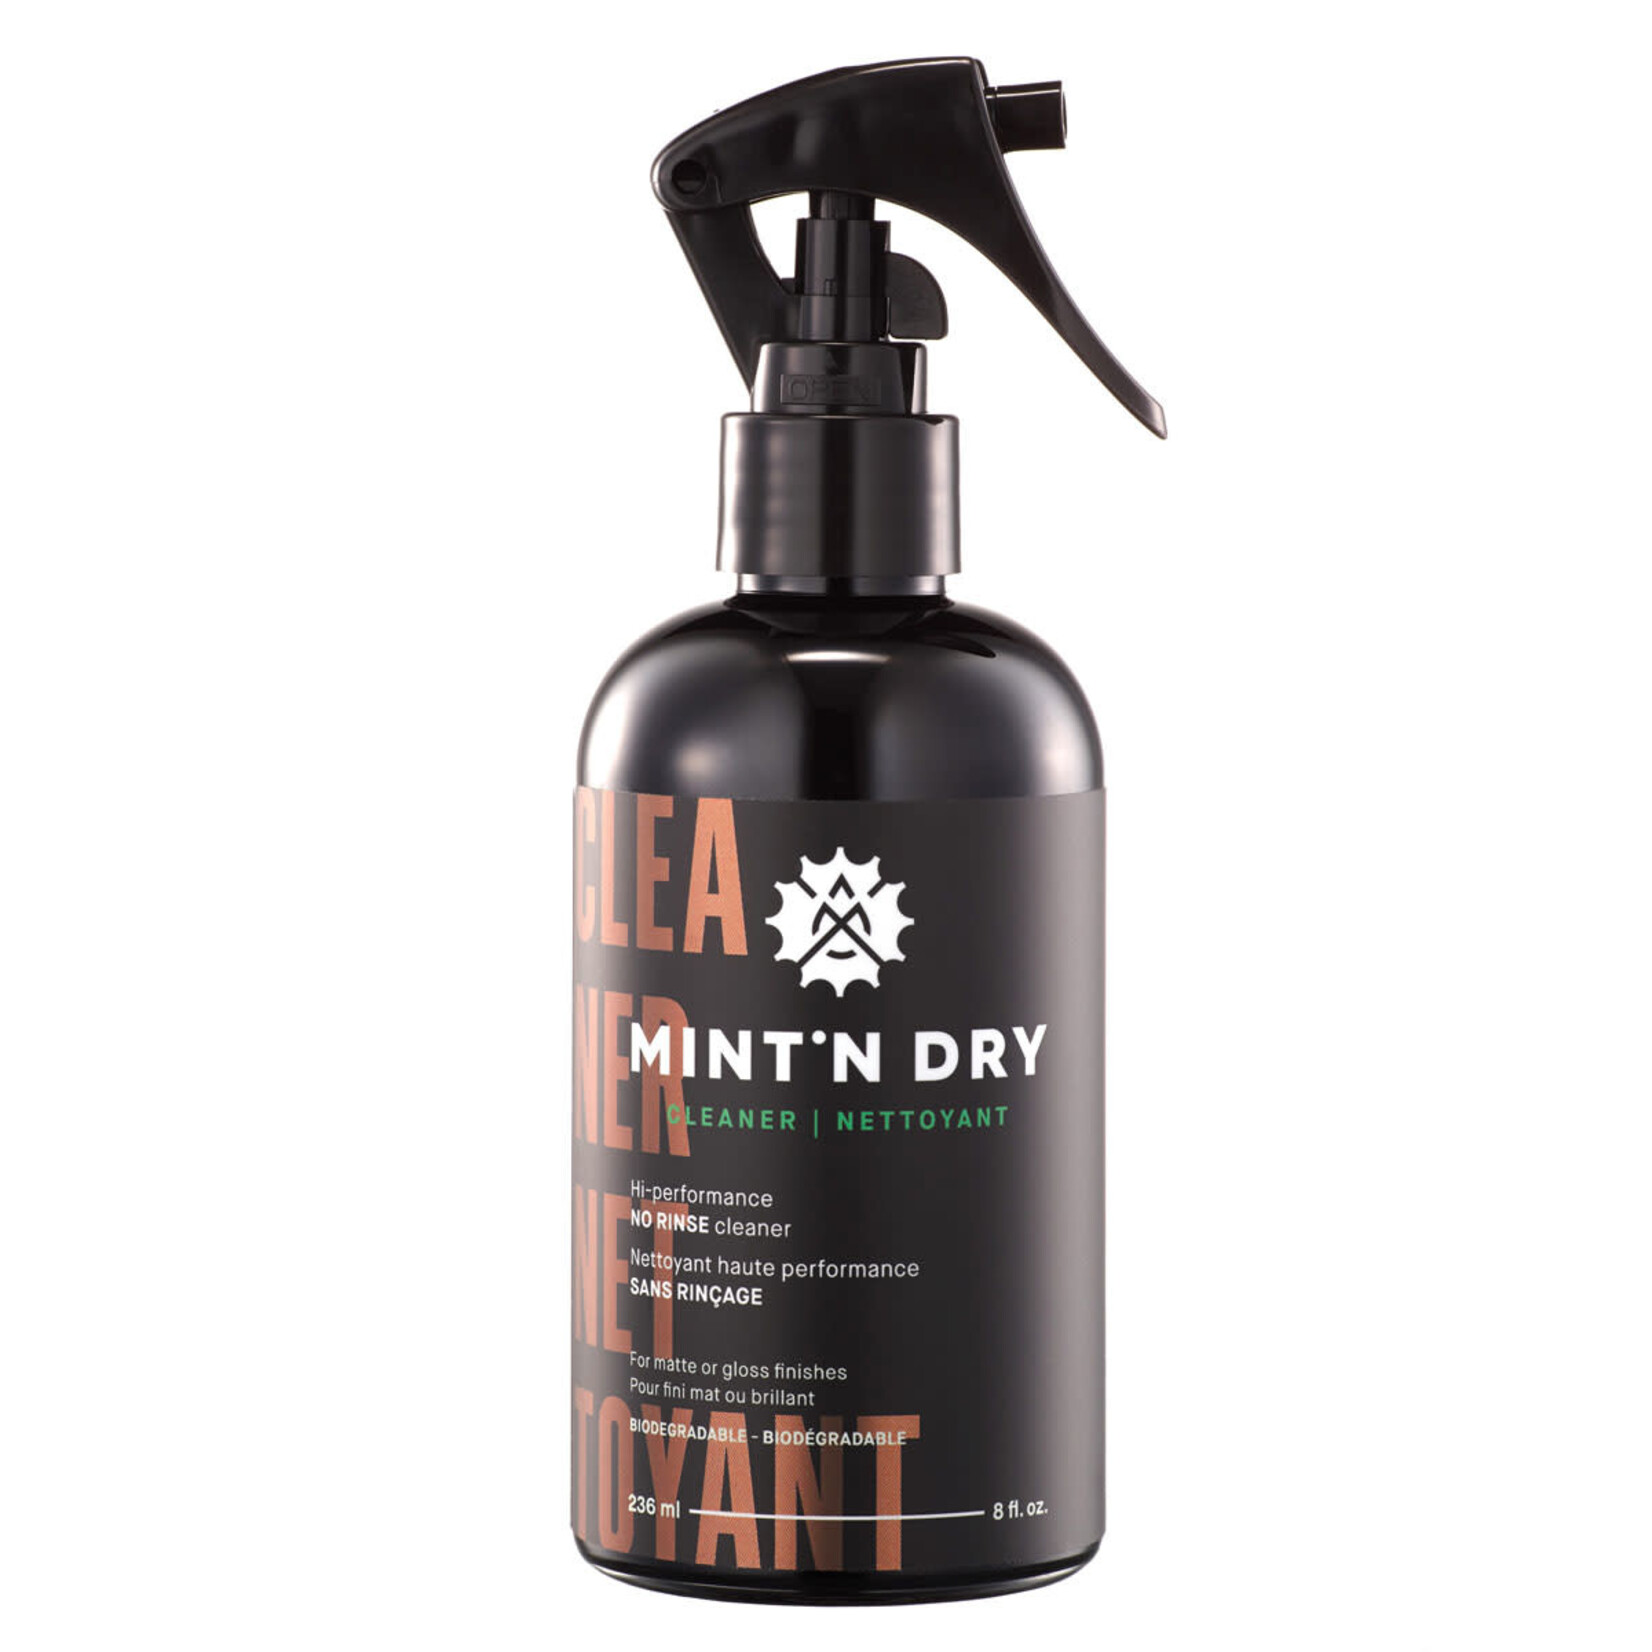 MINT'N DRY Mint 'n Dry Cleaner (236ml)